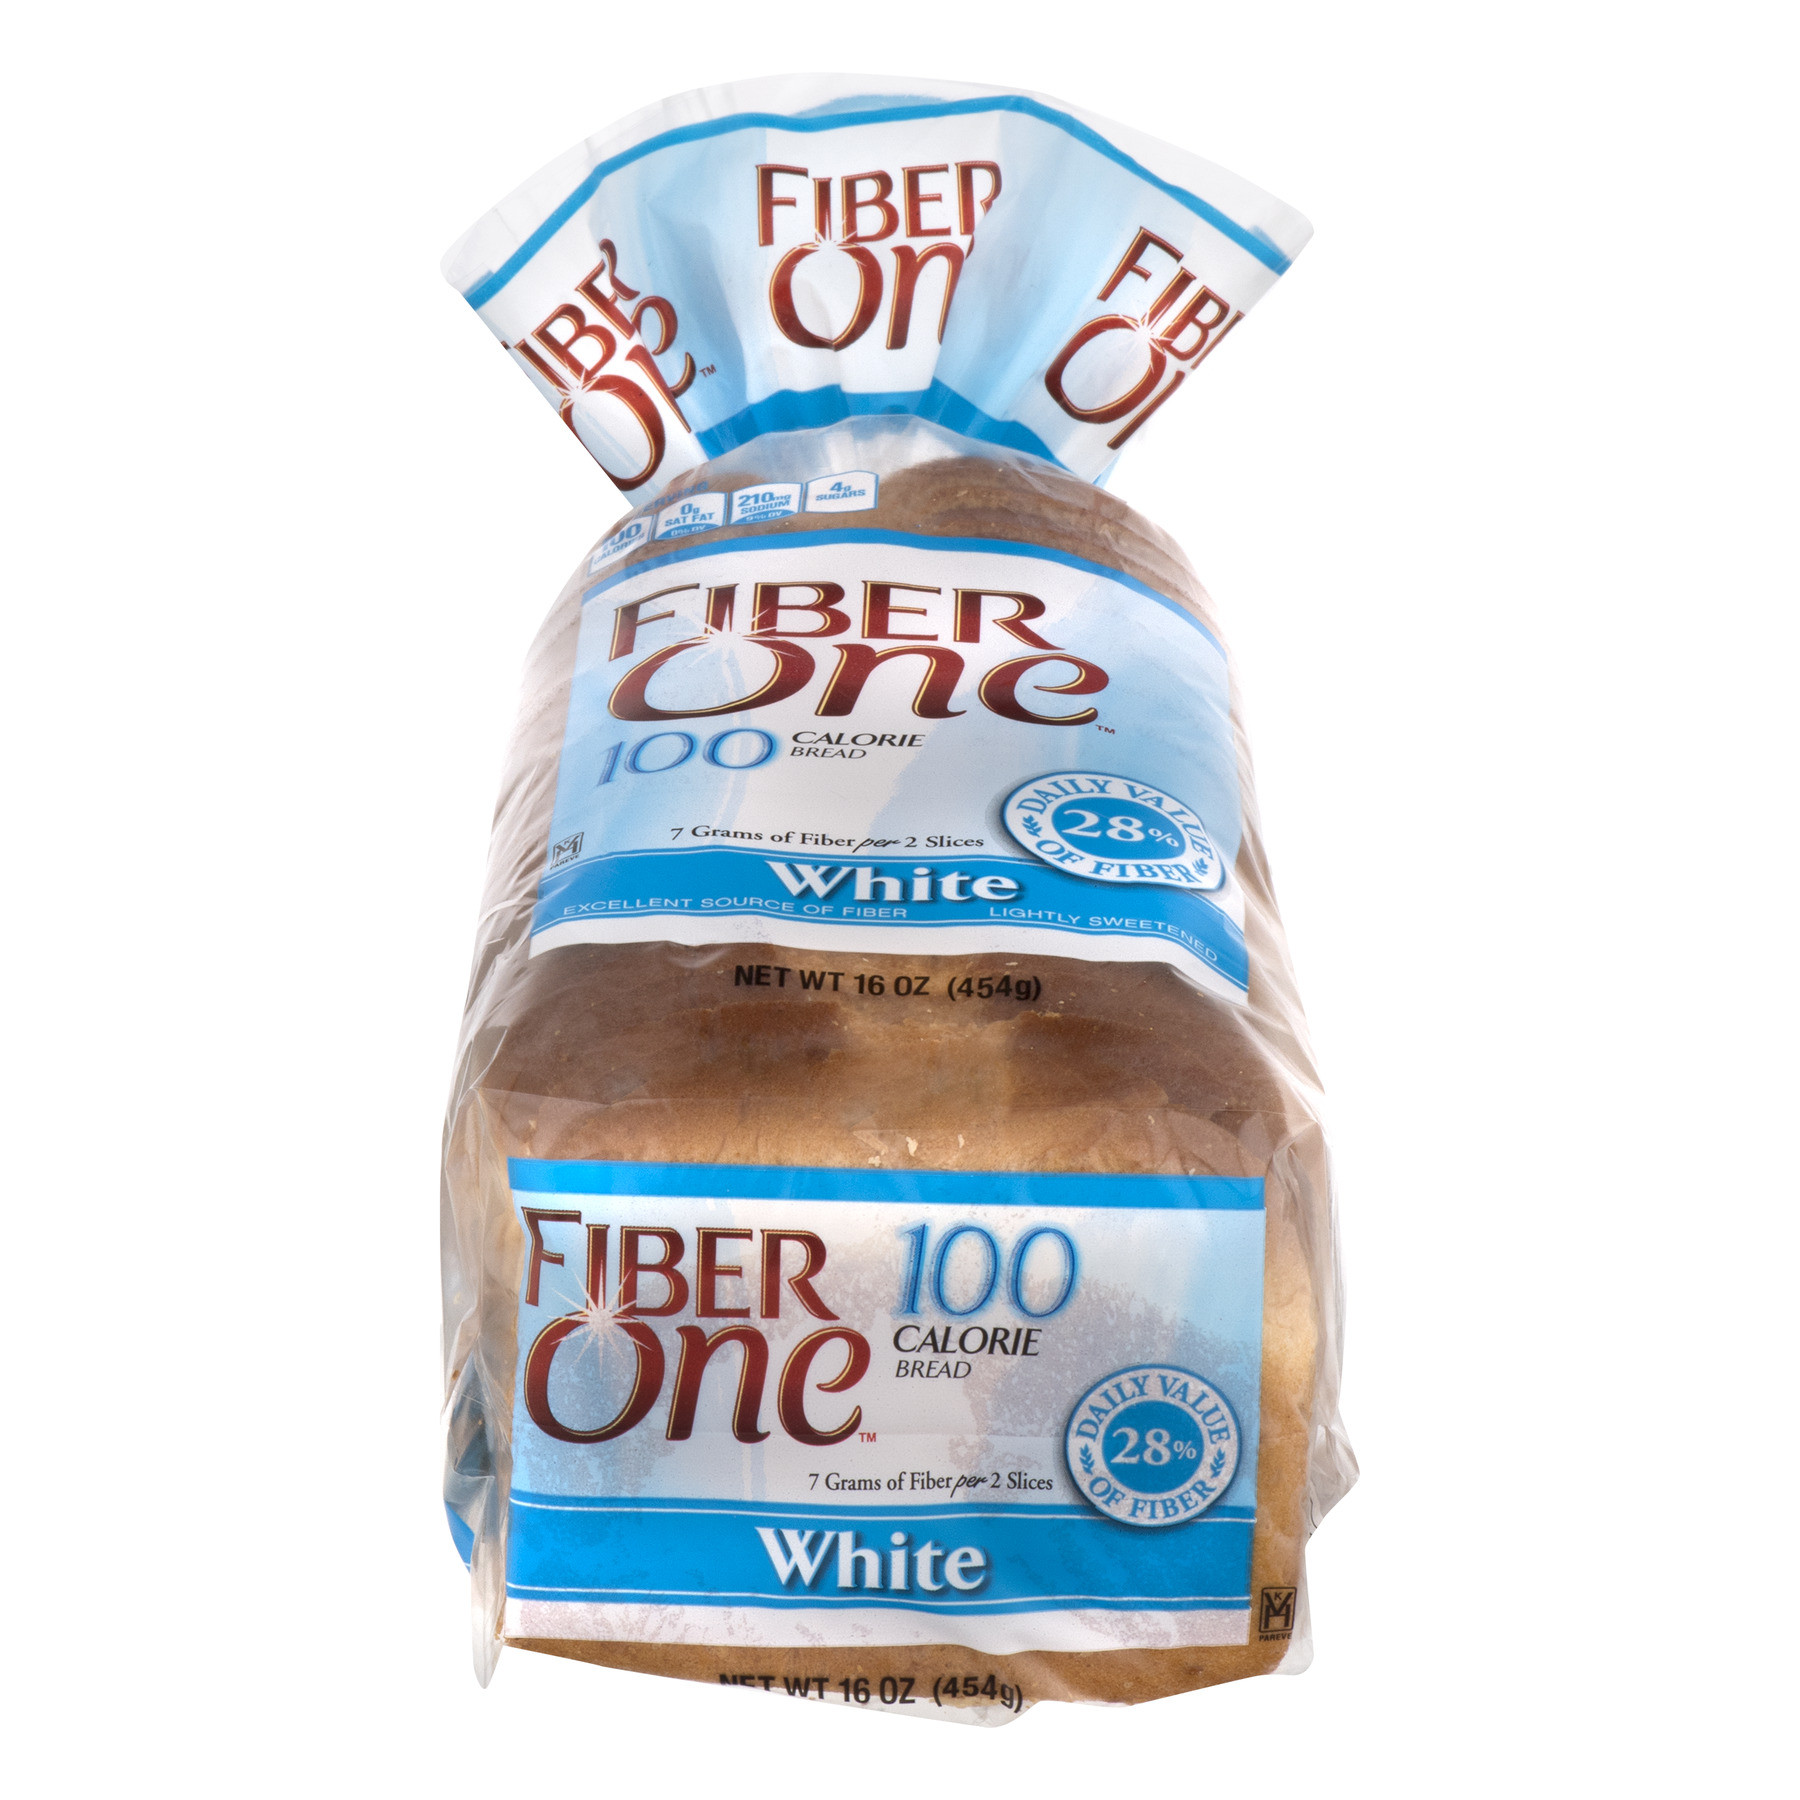 Fiber In White Bread Fresh Fiber E 100 Calorie Bread White Walmart Walmart